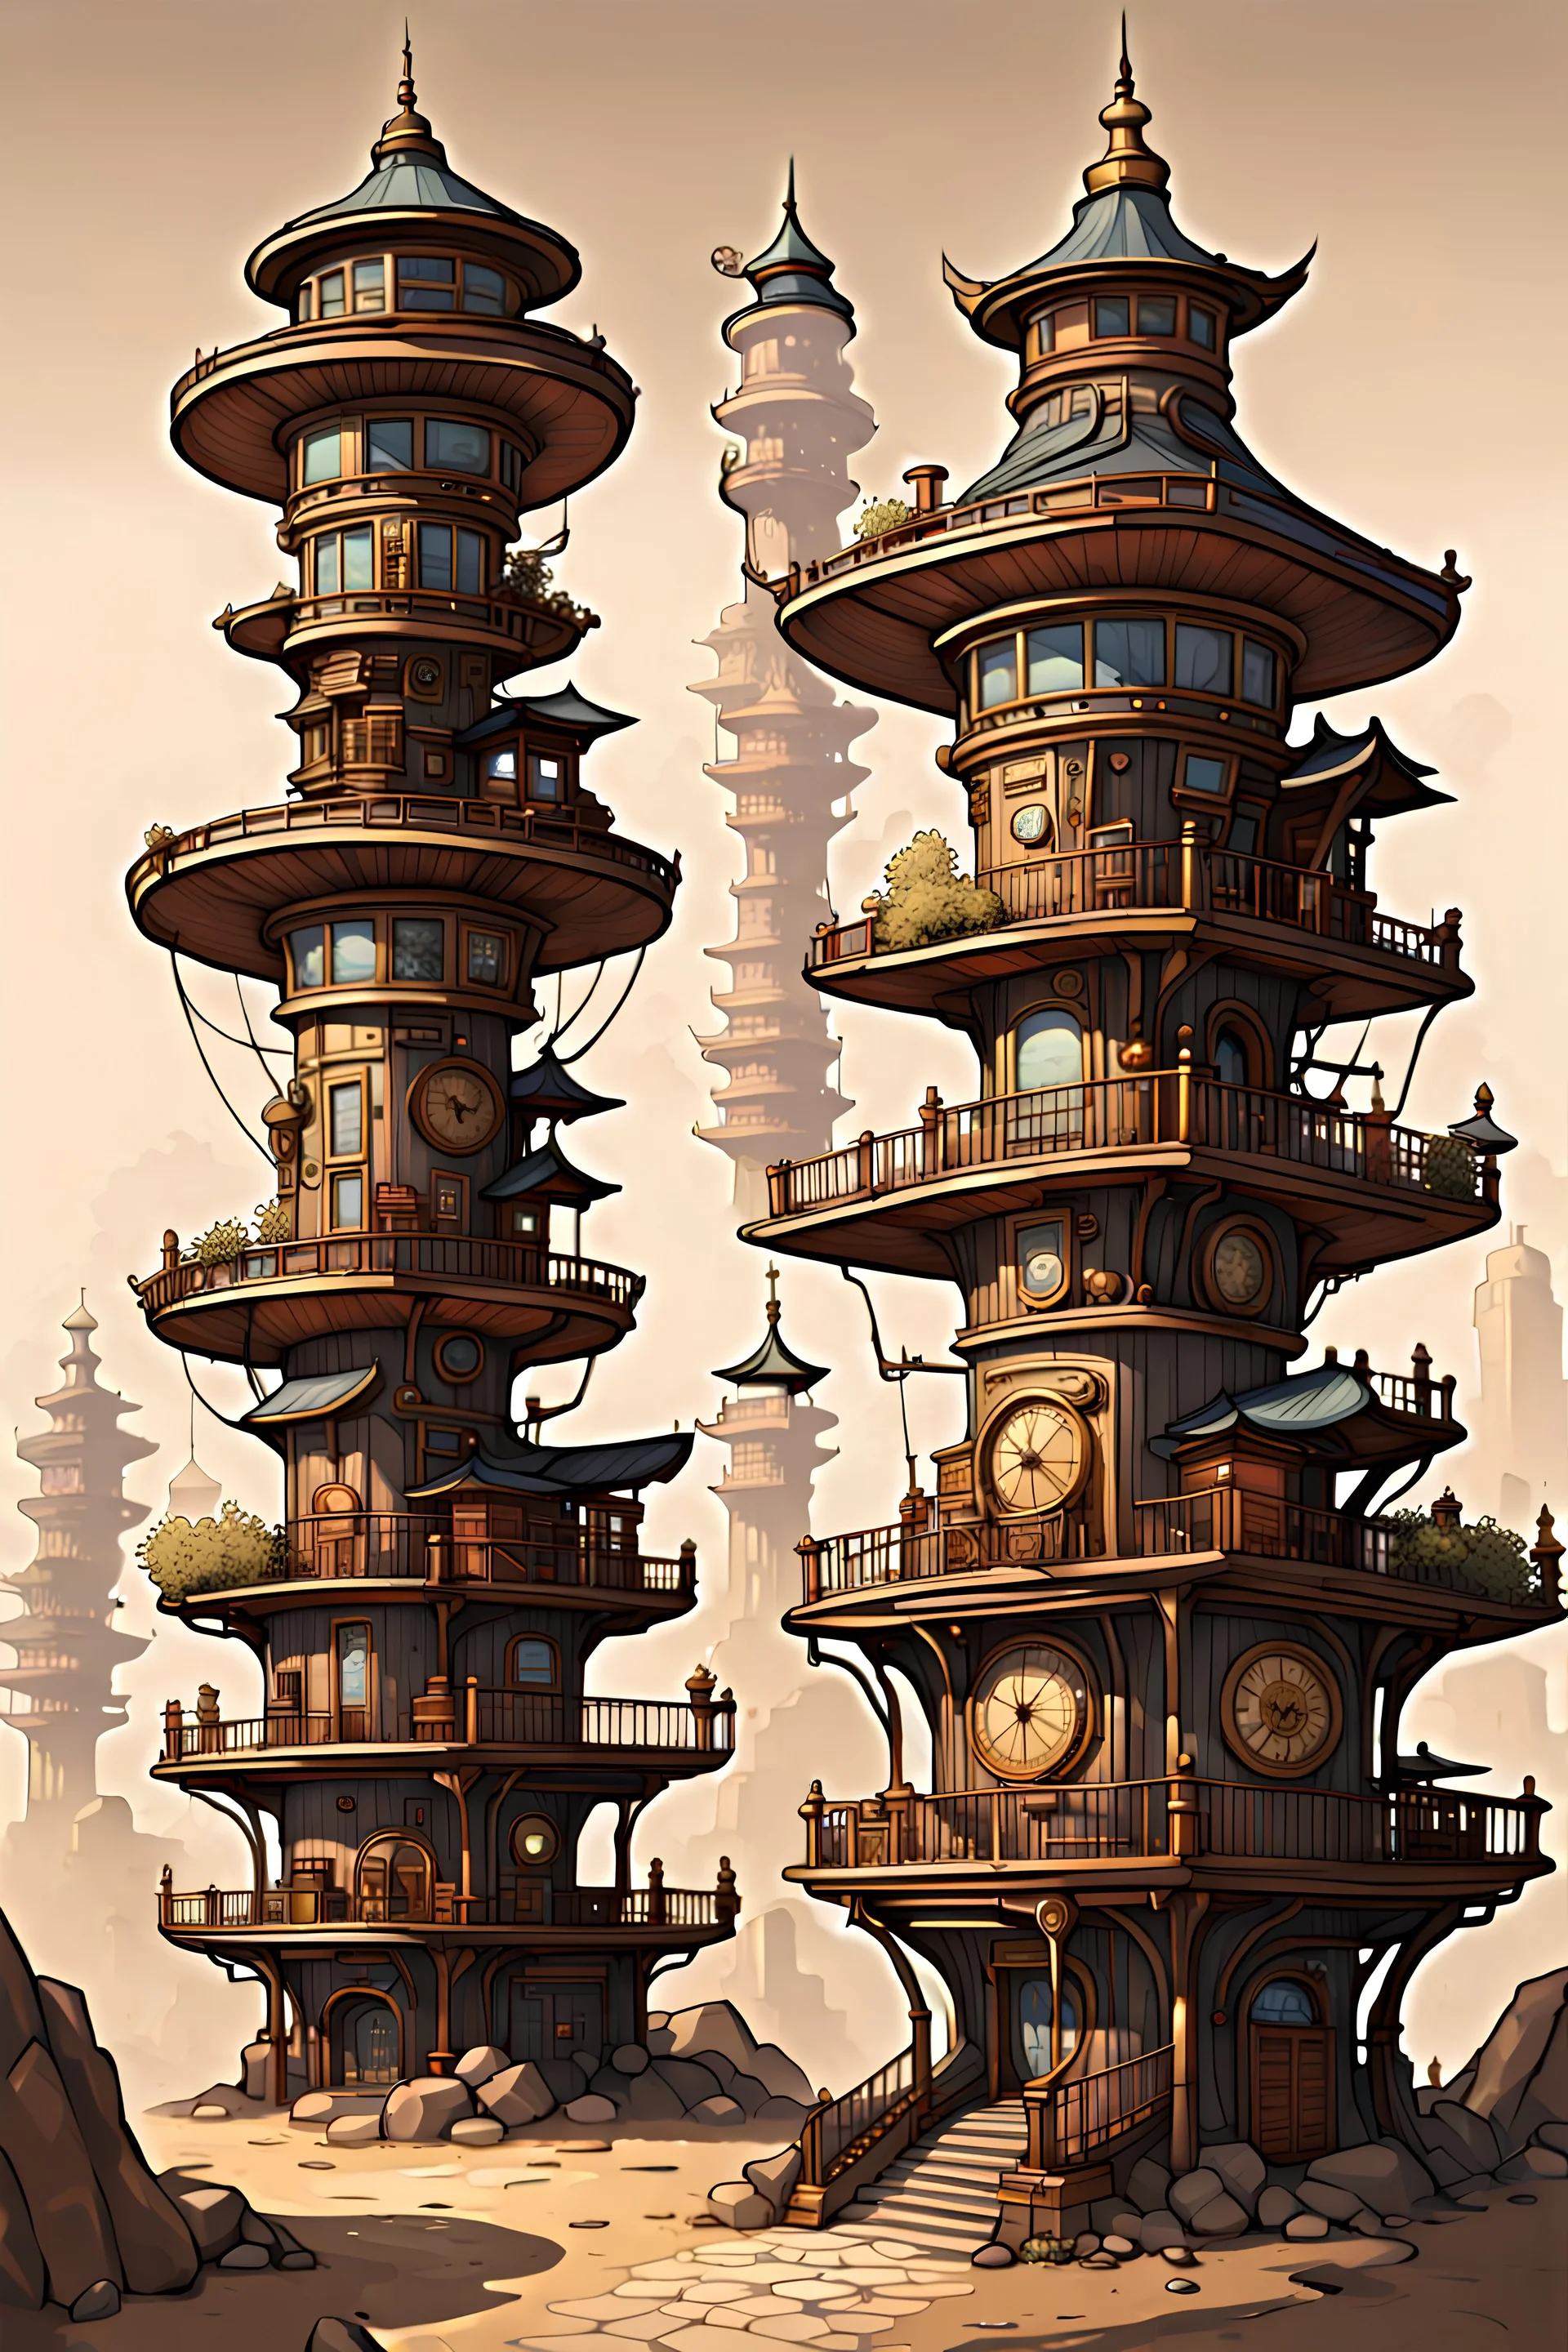 한옥집들이 빽빽하게 들어선 스팀펑크 스타일의 타워. 동양의 환상, 오리엔탈리즘, 한국의 오방색